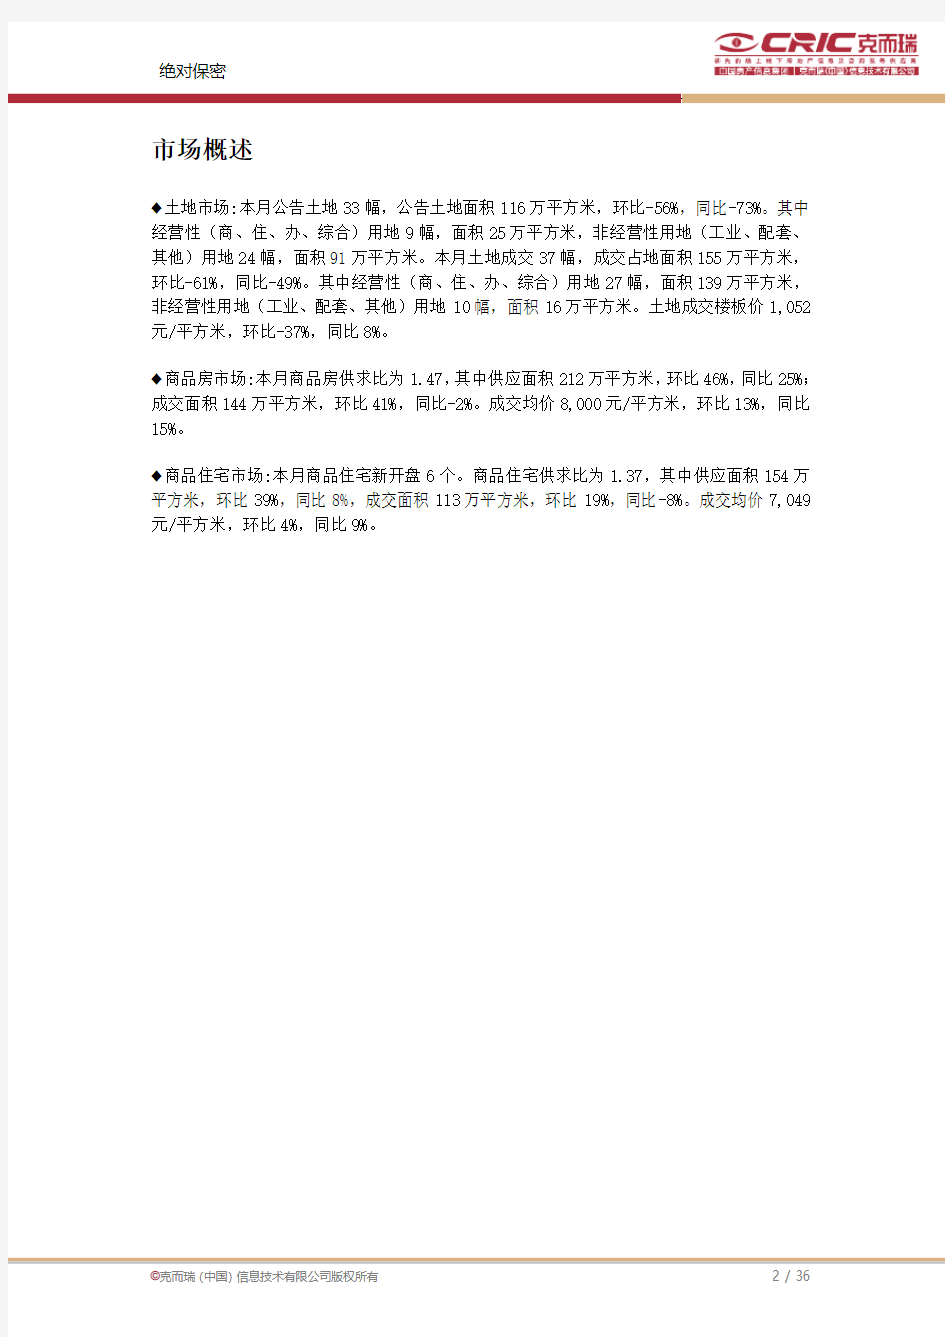 沈阳房地产市场信息集成报告-2012年7月